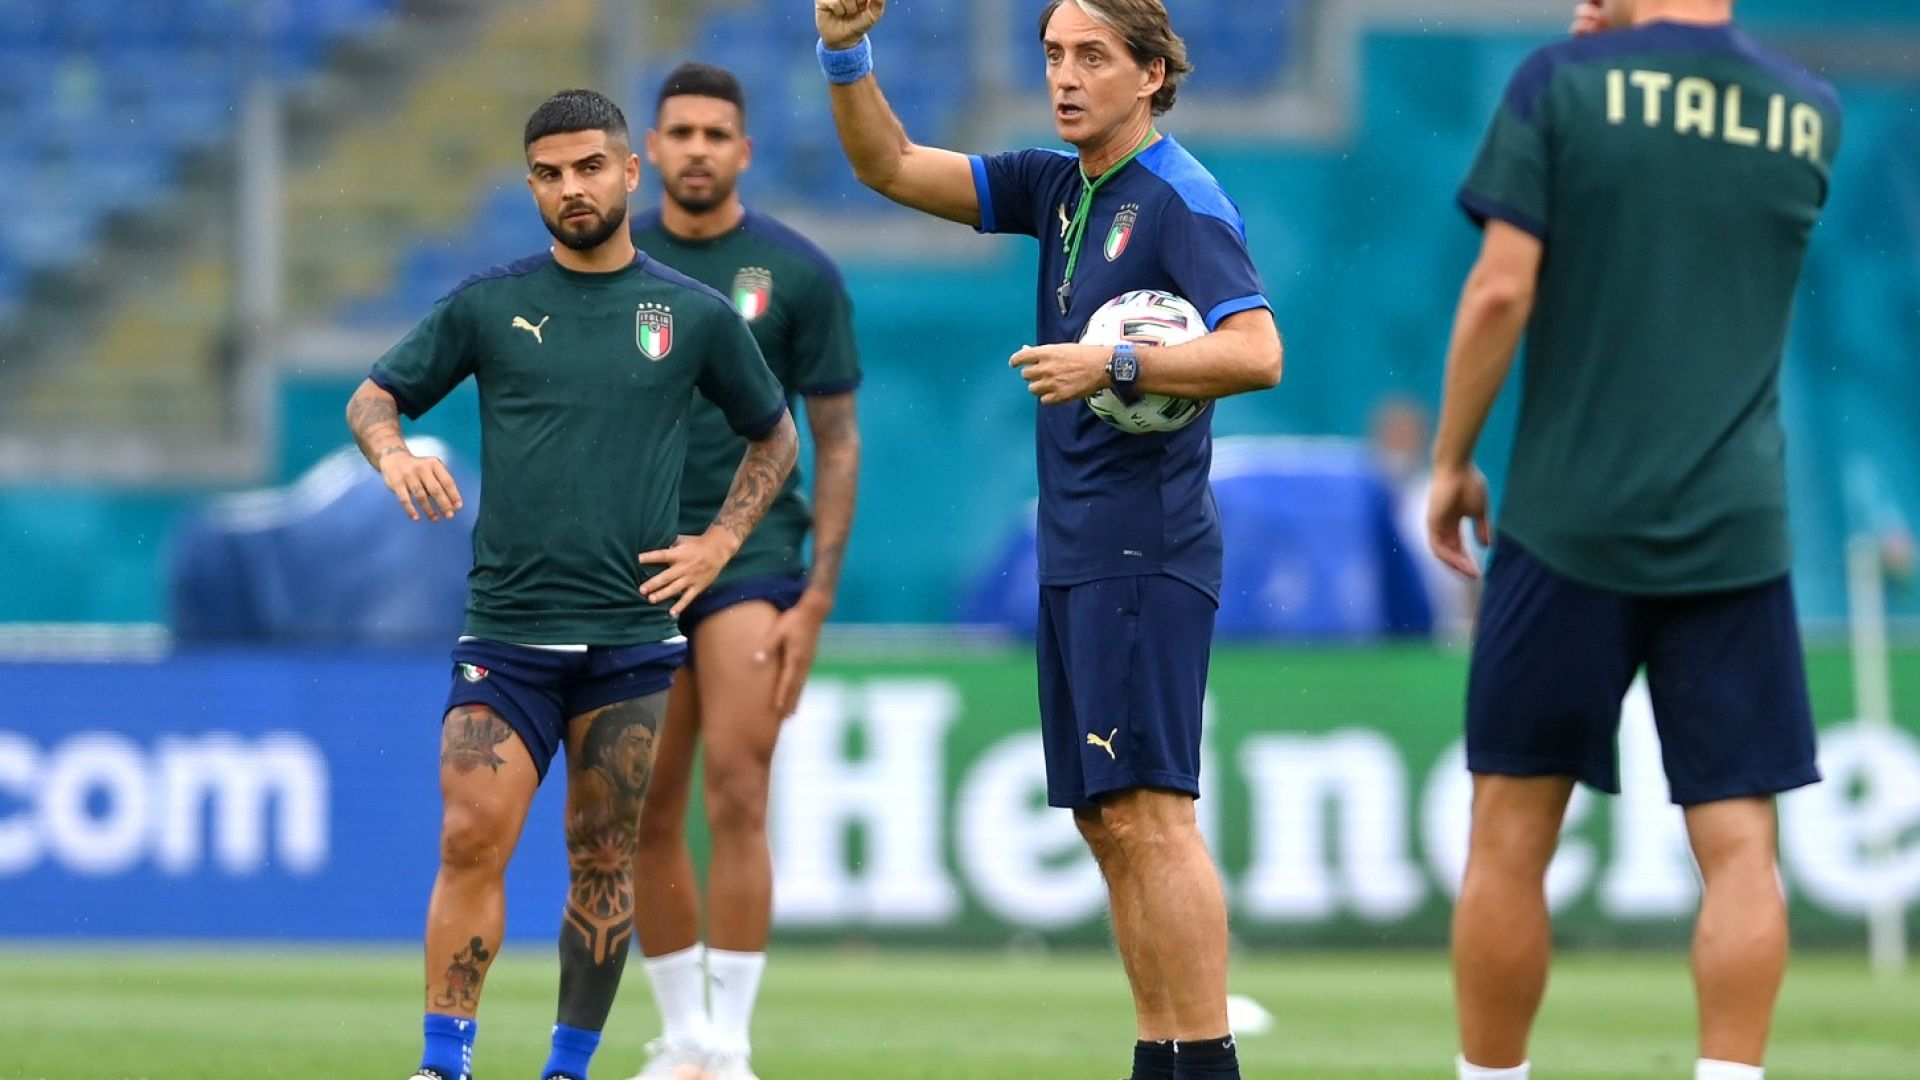 Положителни тестове стреснаха италианците преди големия финал